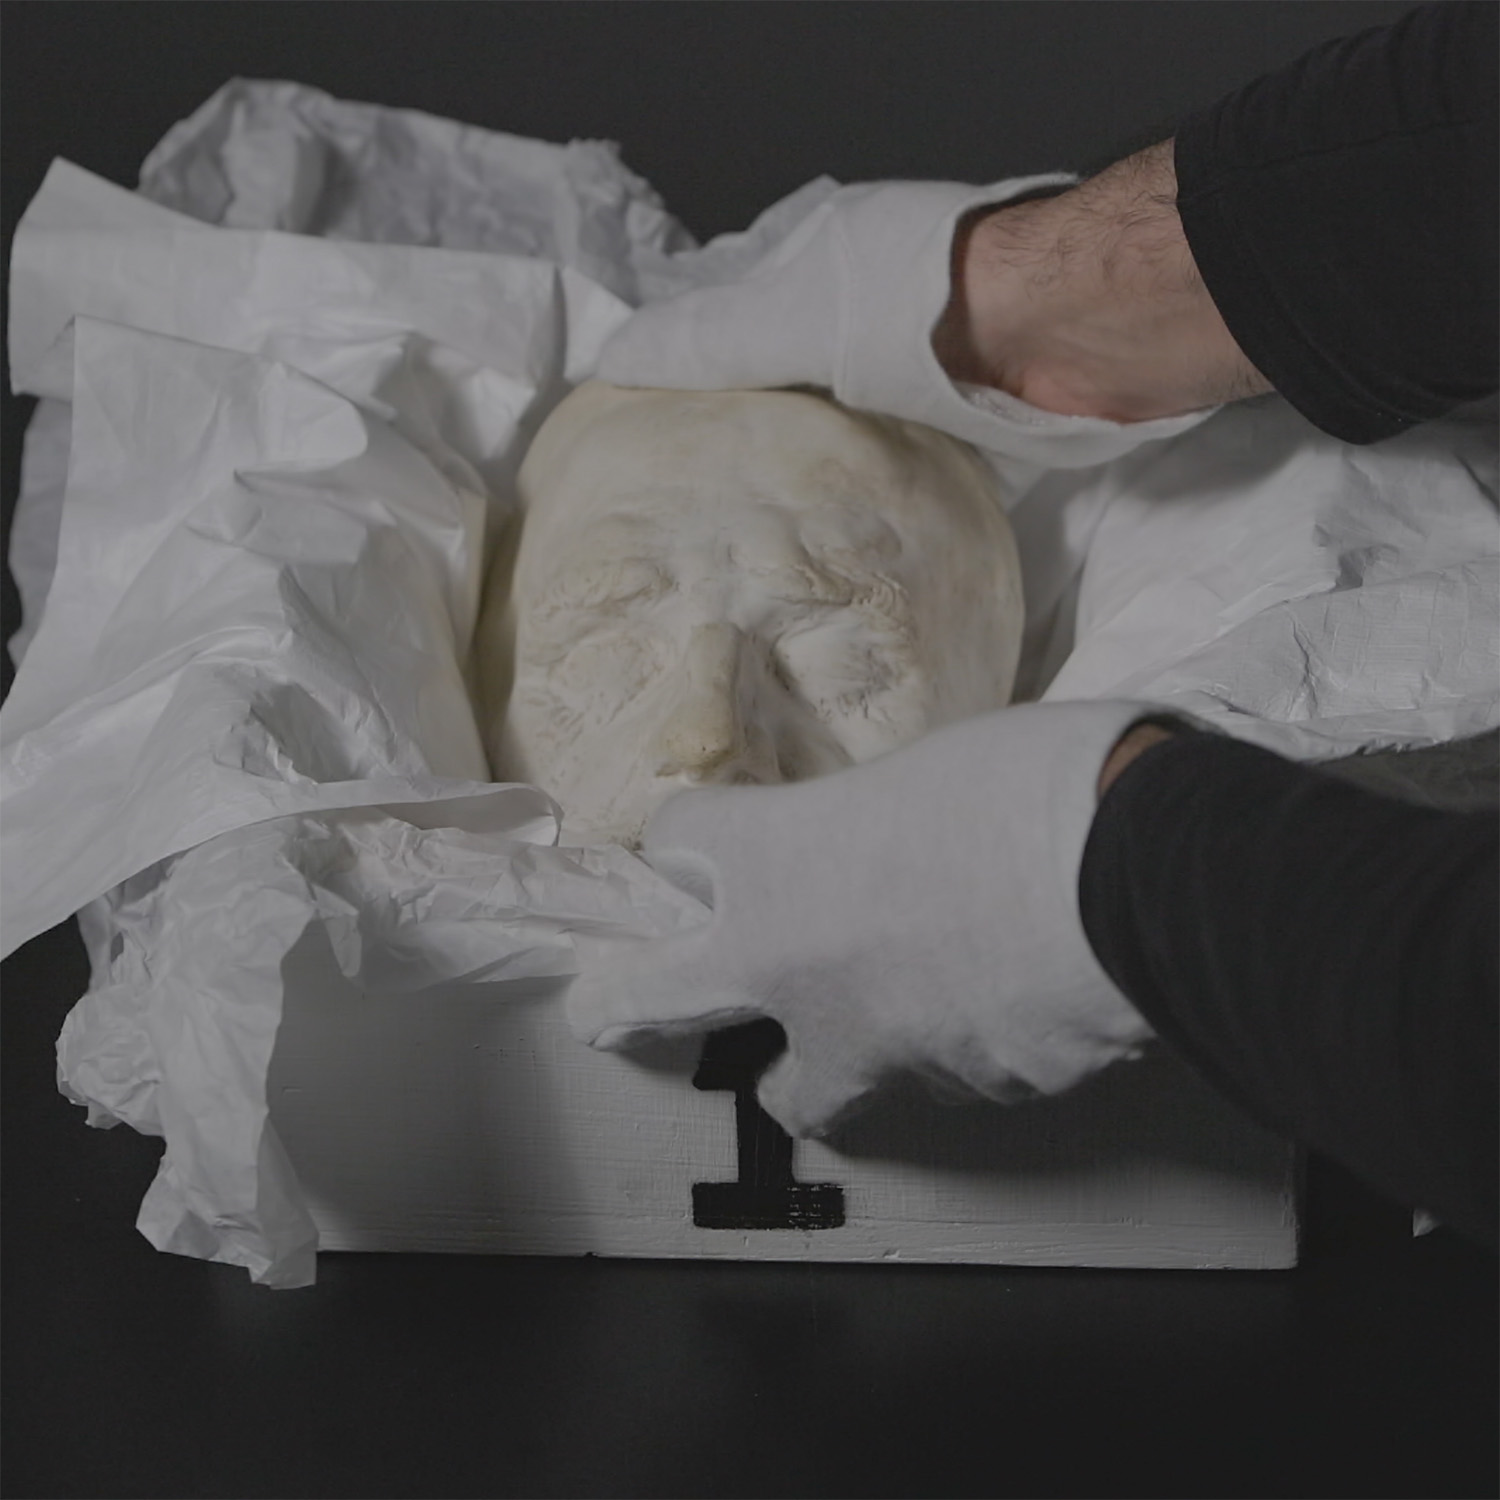 Totenmaske wird von zwei Händen mit weißen handschuhen in eine Kiste gelegt